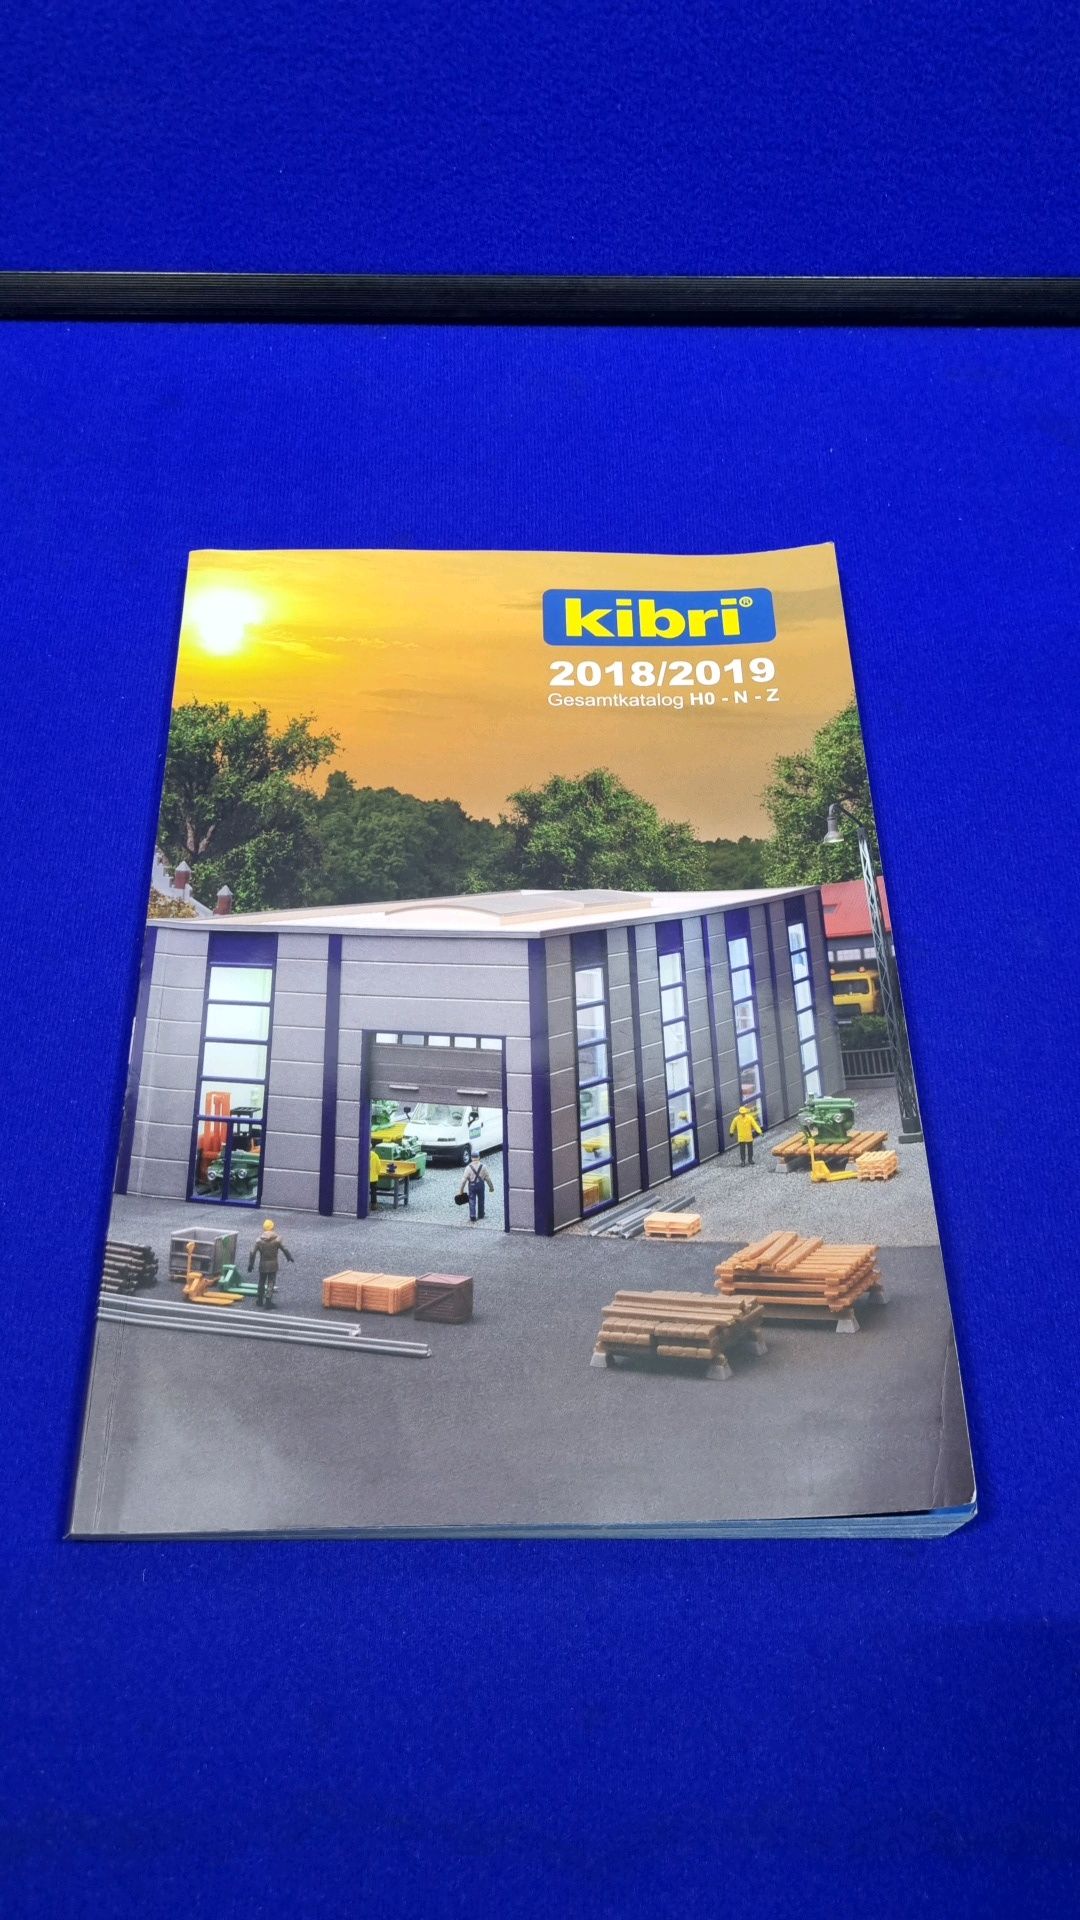 1 x Kibri 2018/2019 Catalogue